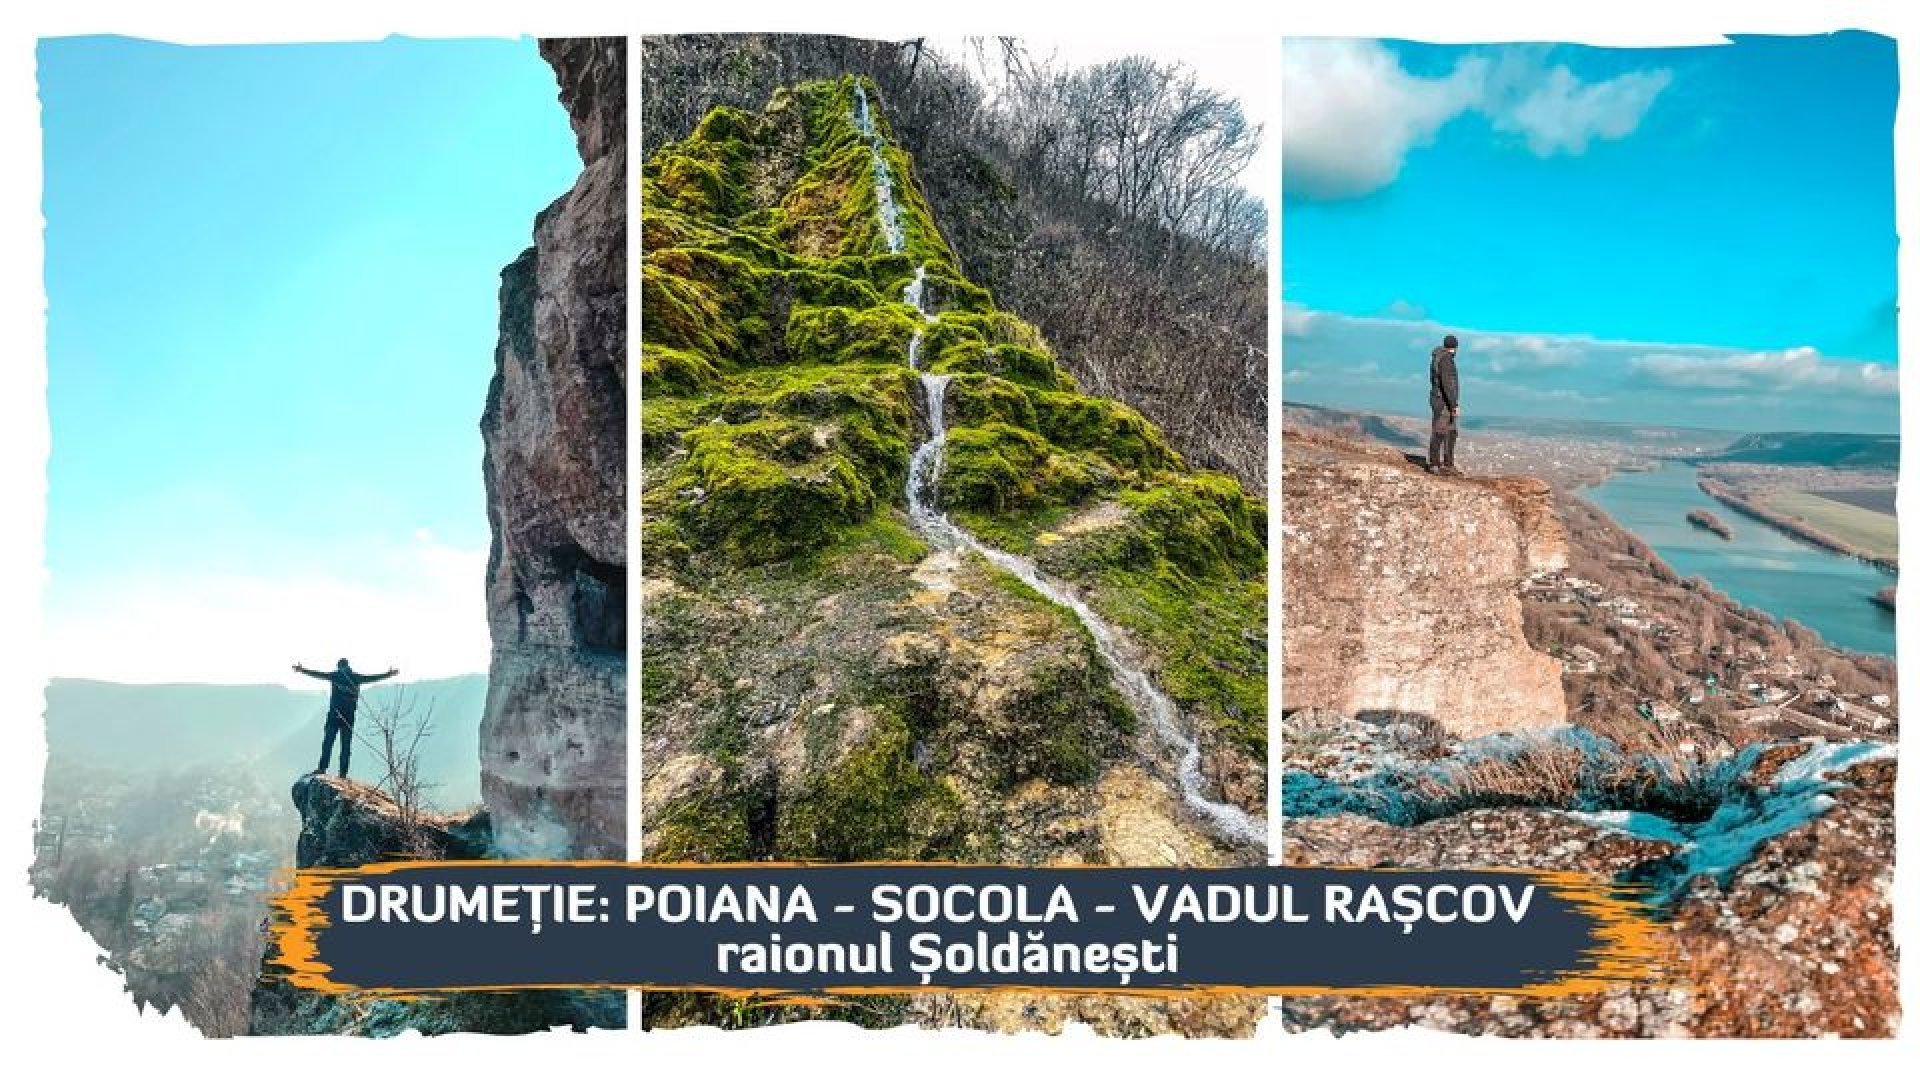 Drumeție ușoară: Poiana - Socola - Vadul Rașcov